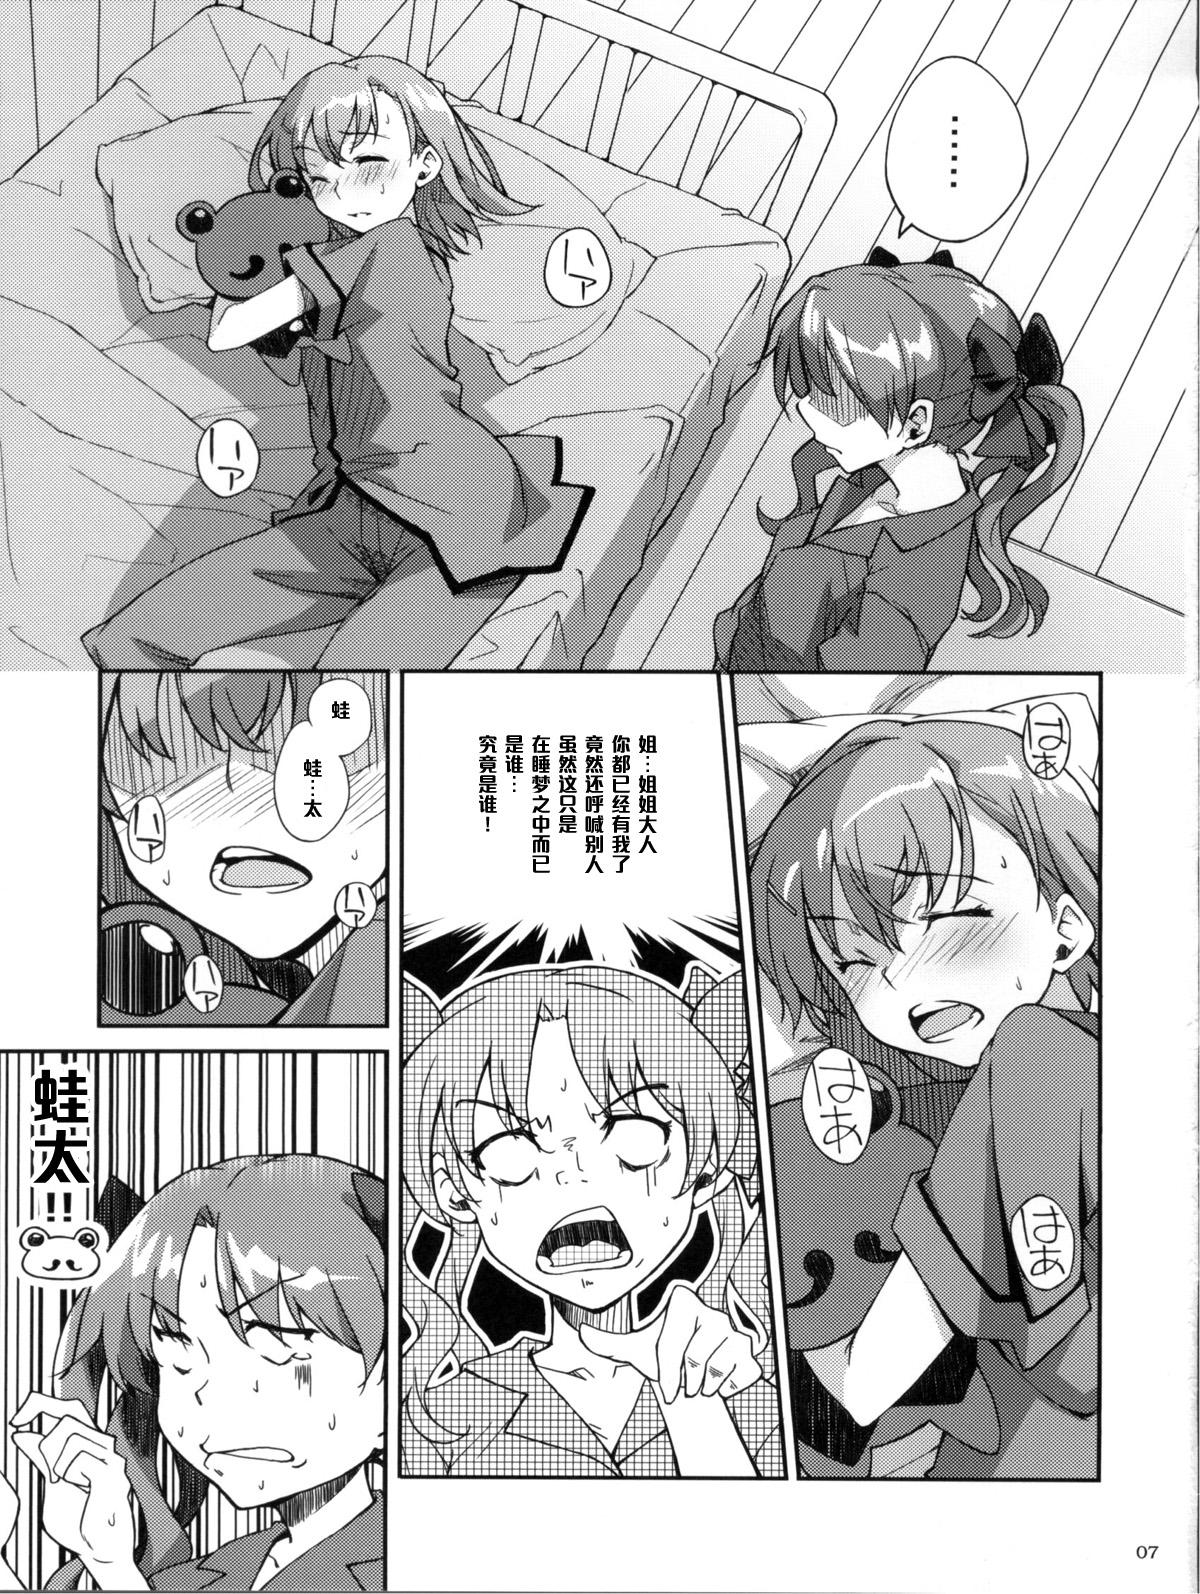 Emo Gay Desu no!! 2 - Toaru kagaku no railgun Famosa - Page 7